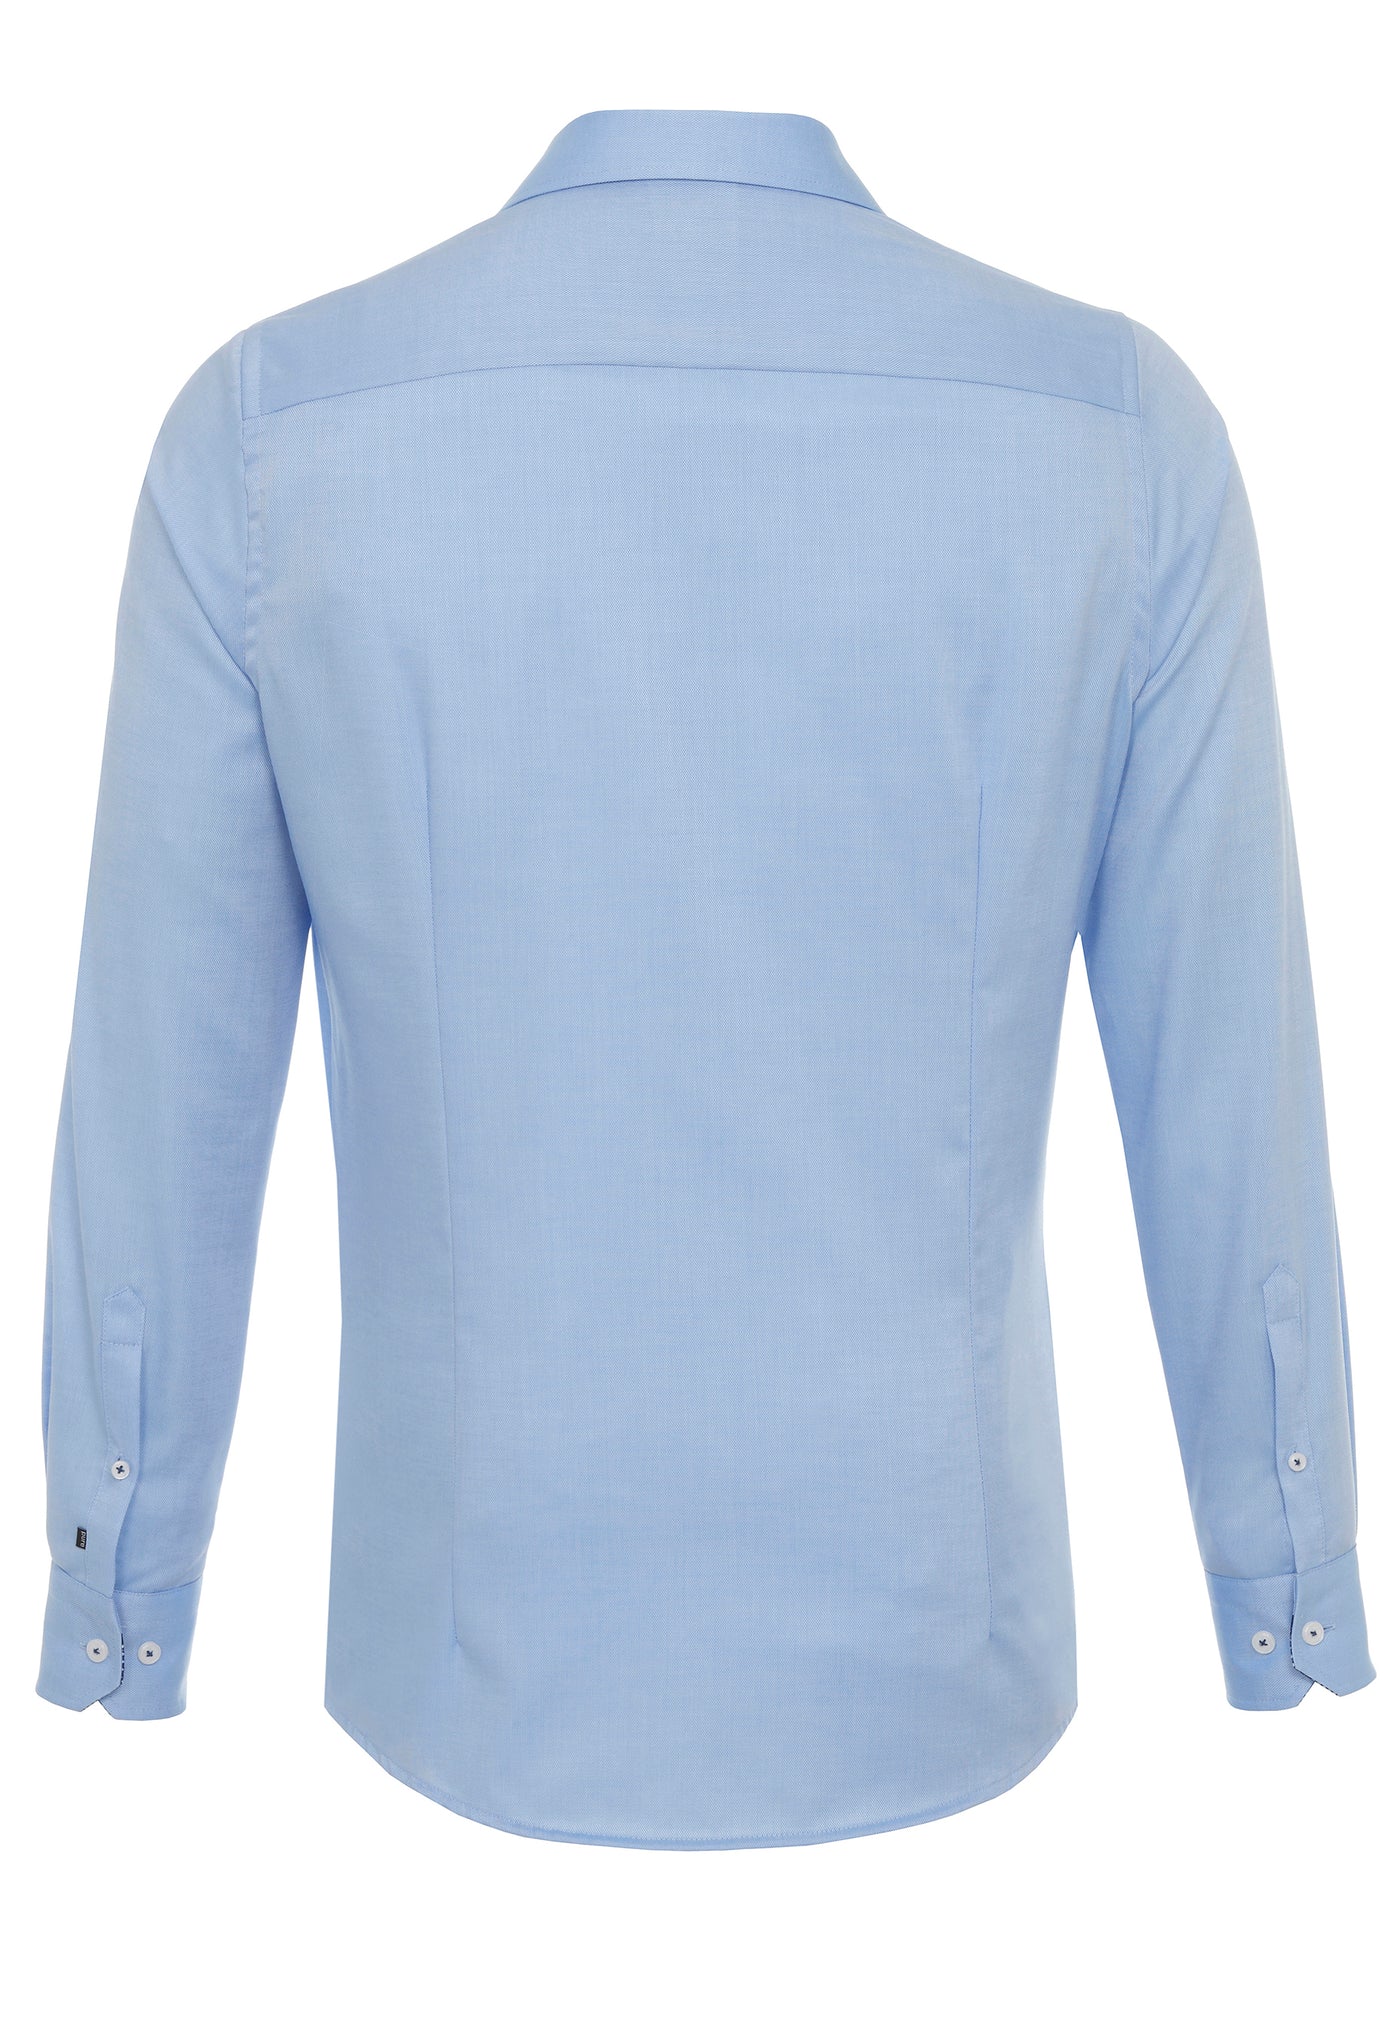 4020-414 - City Shirt Modern Fit - blue